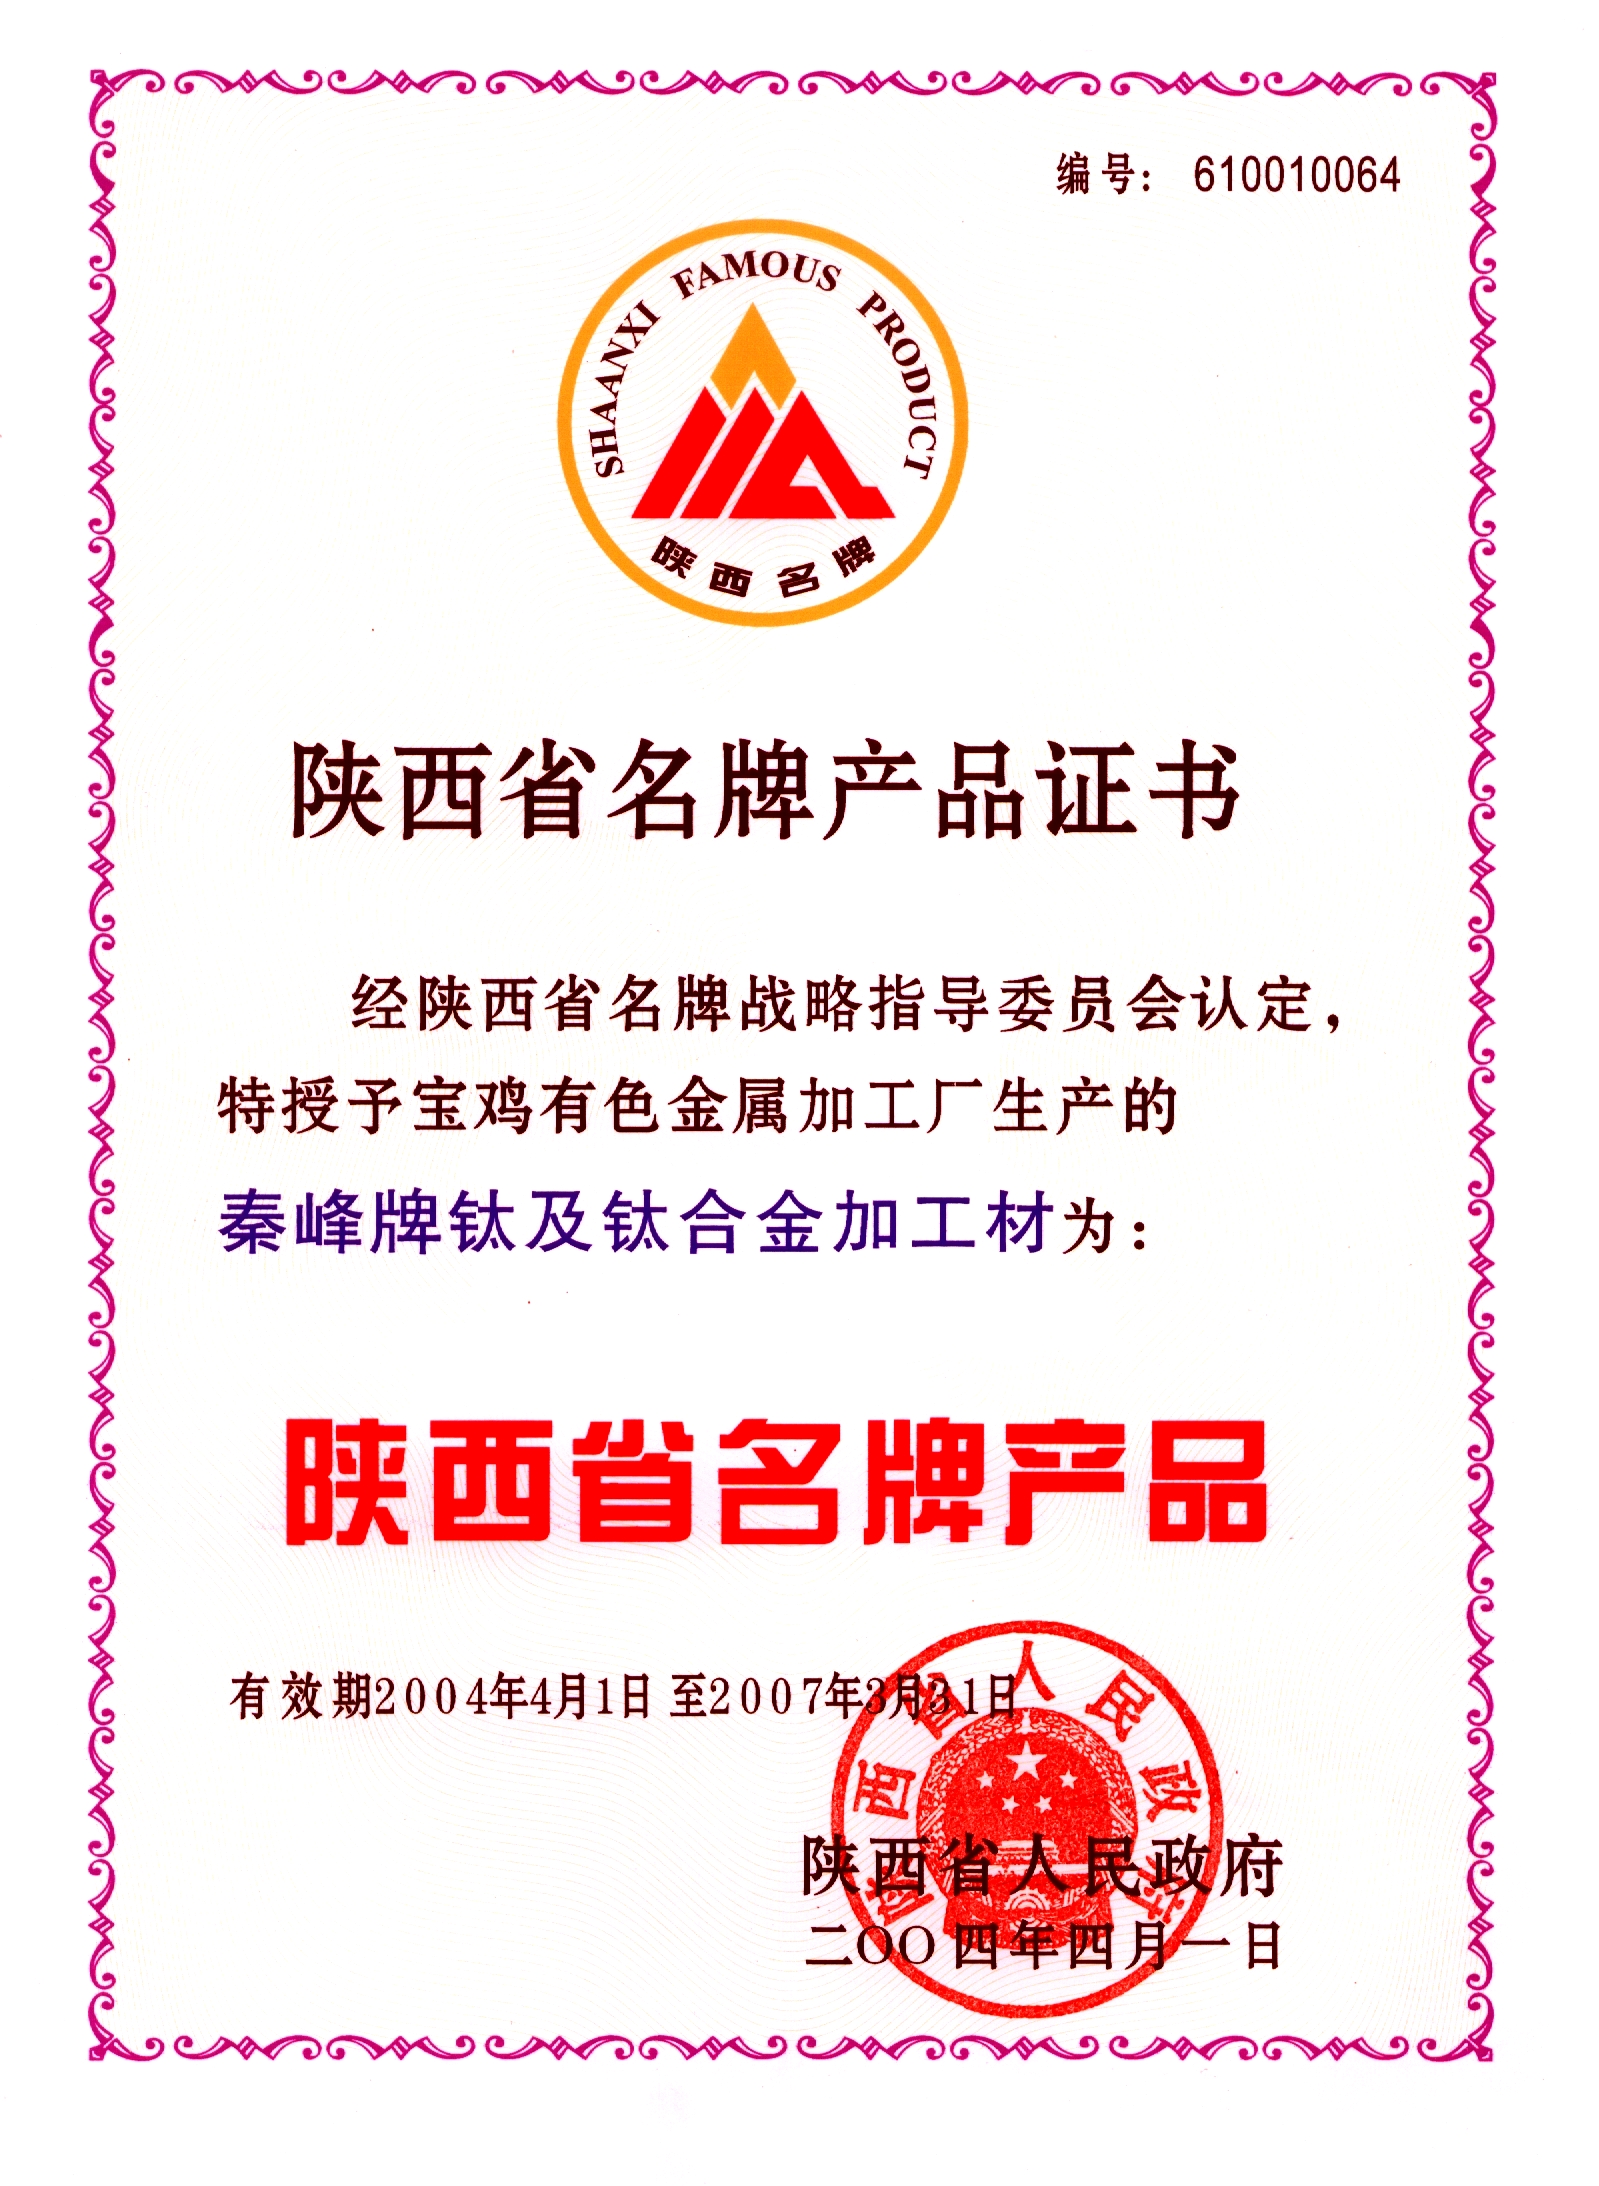 陕西省名牌天游web手机端-天游web手机端下载证书